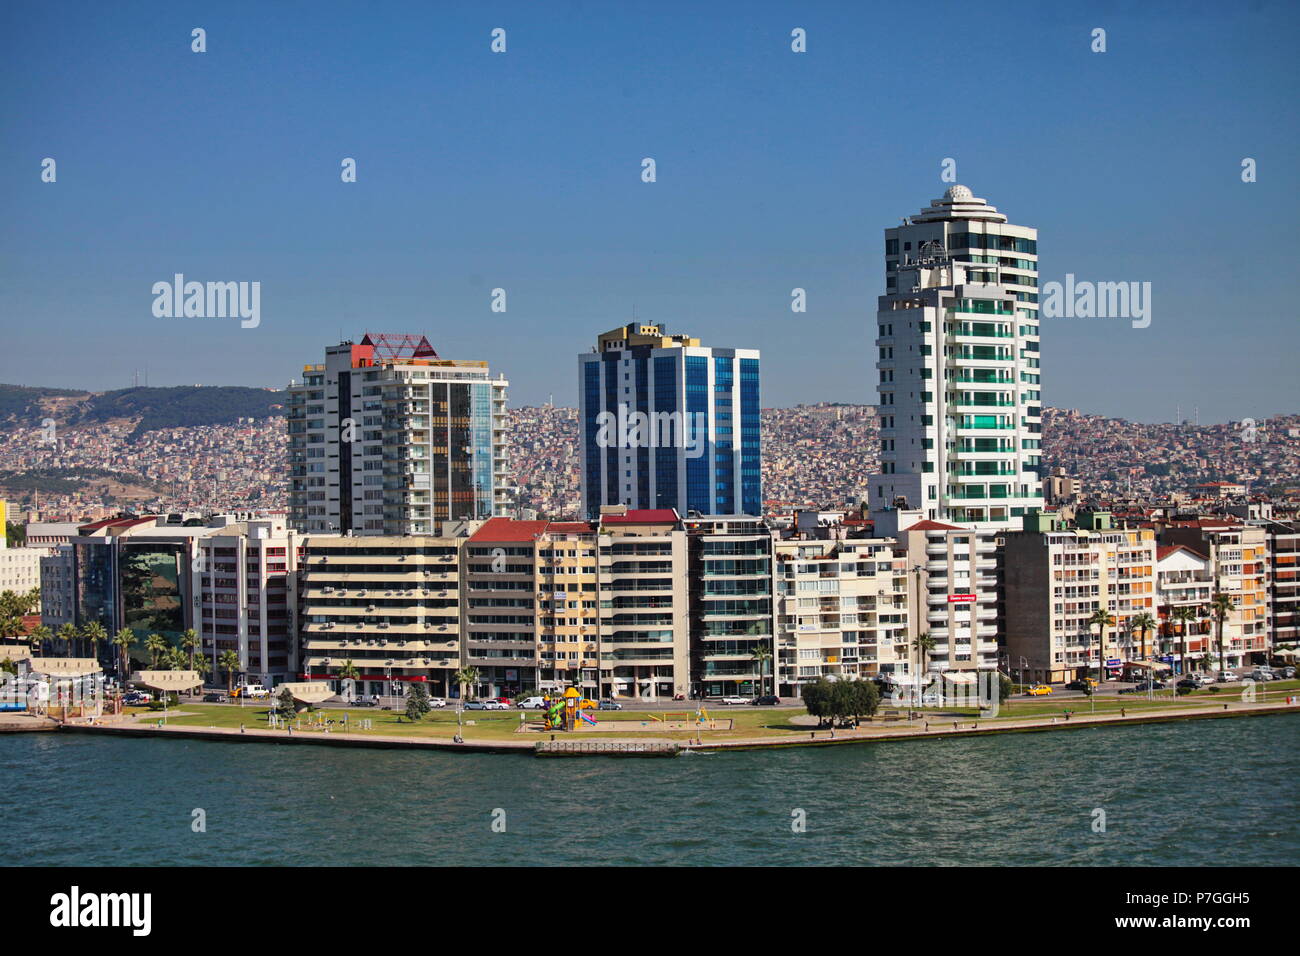 IZMIR, TURQUIE - 26 juin 2015 : vue panoramique du front de mer d'Izmir, Turquie Banque D'Images